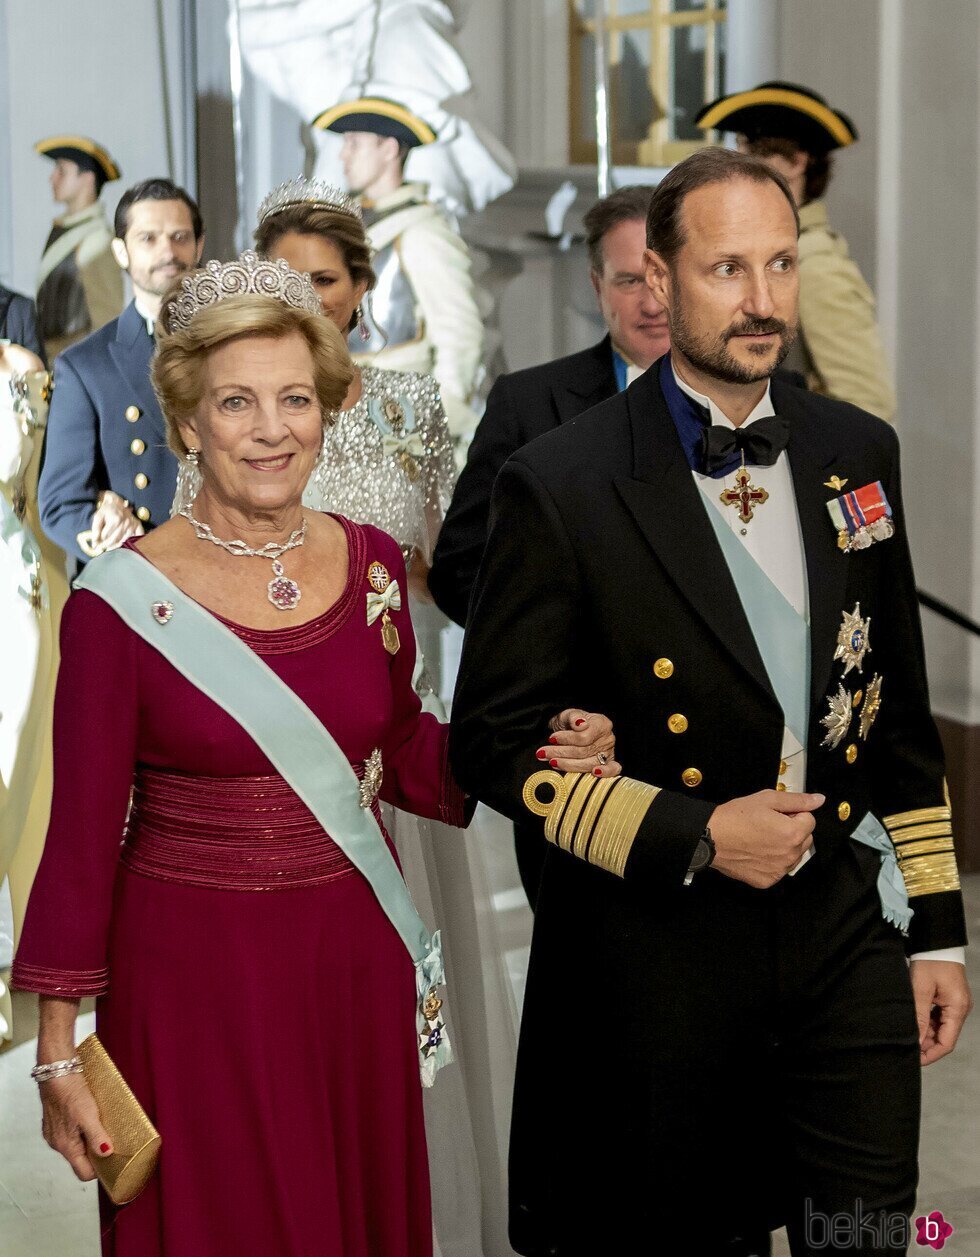 Ana María de Grecia con la Tiara Khedive de Egipto y Haakon de Noruega en la cena por el Jubileo de Carlos Gustavo de Suecia